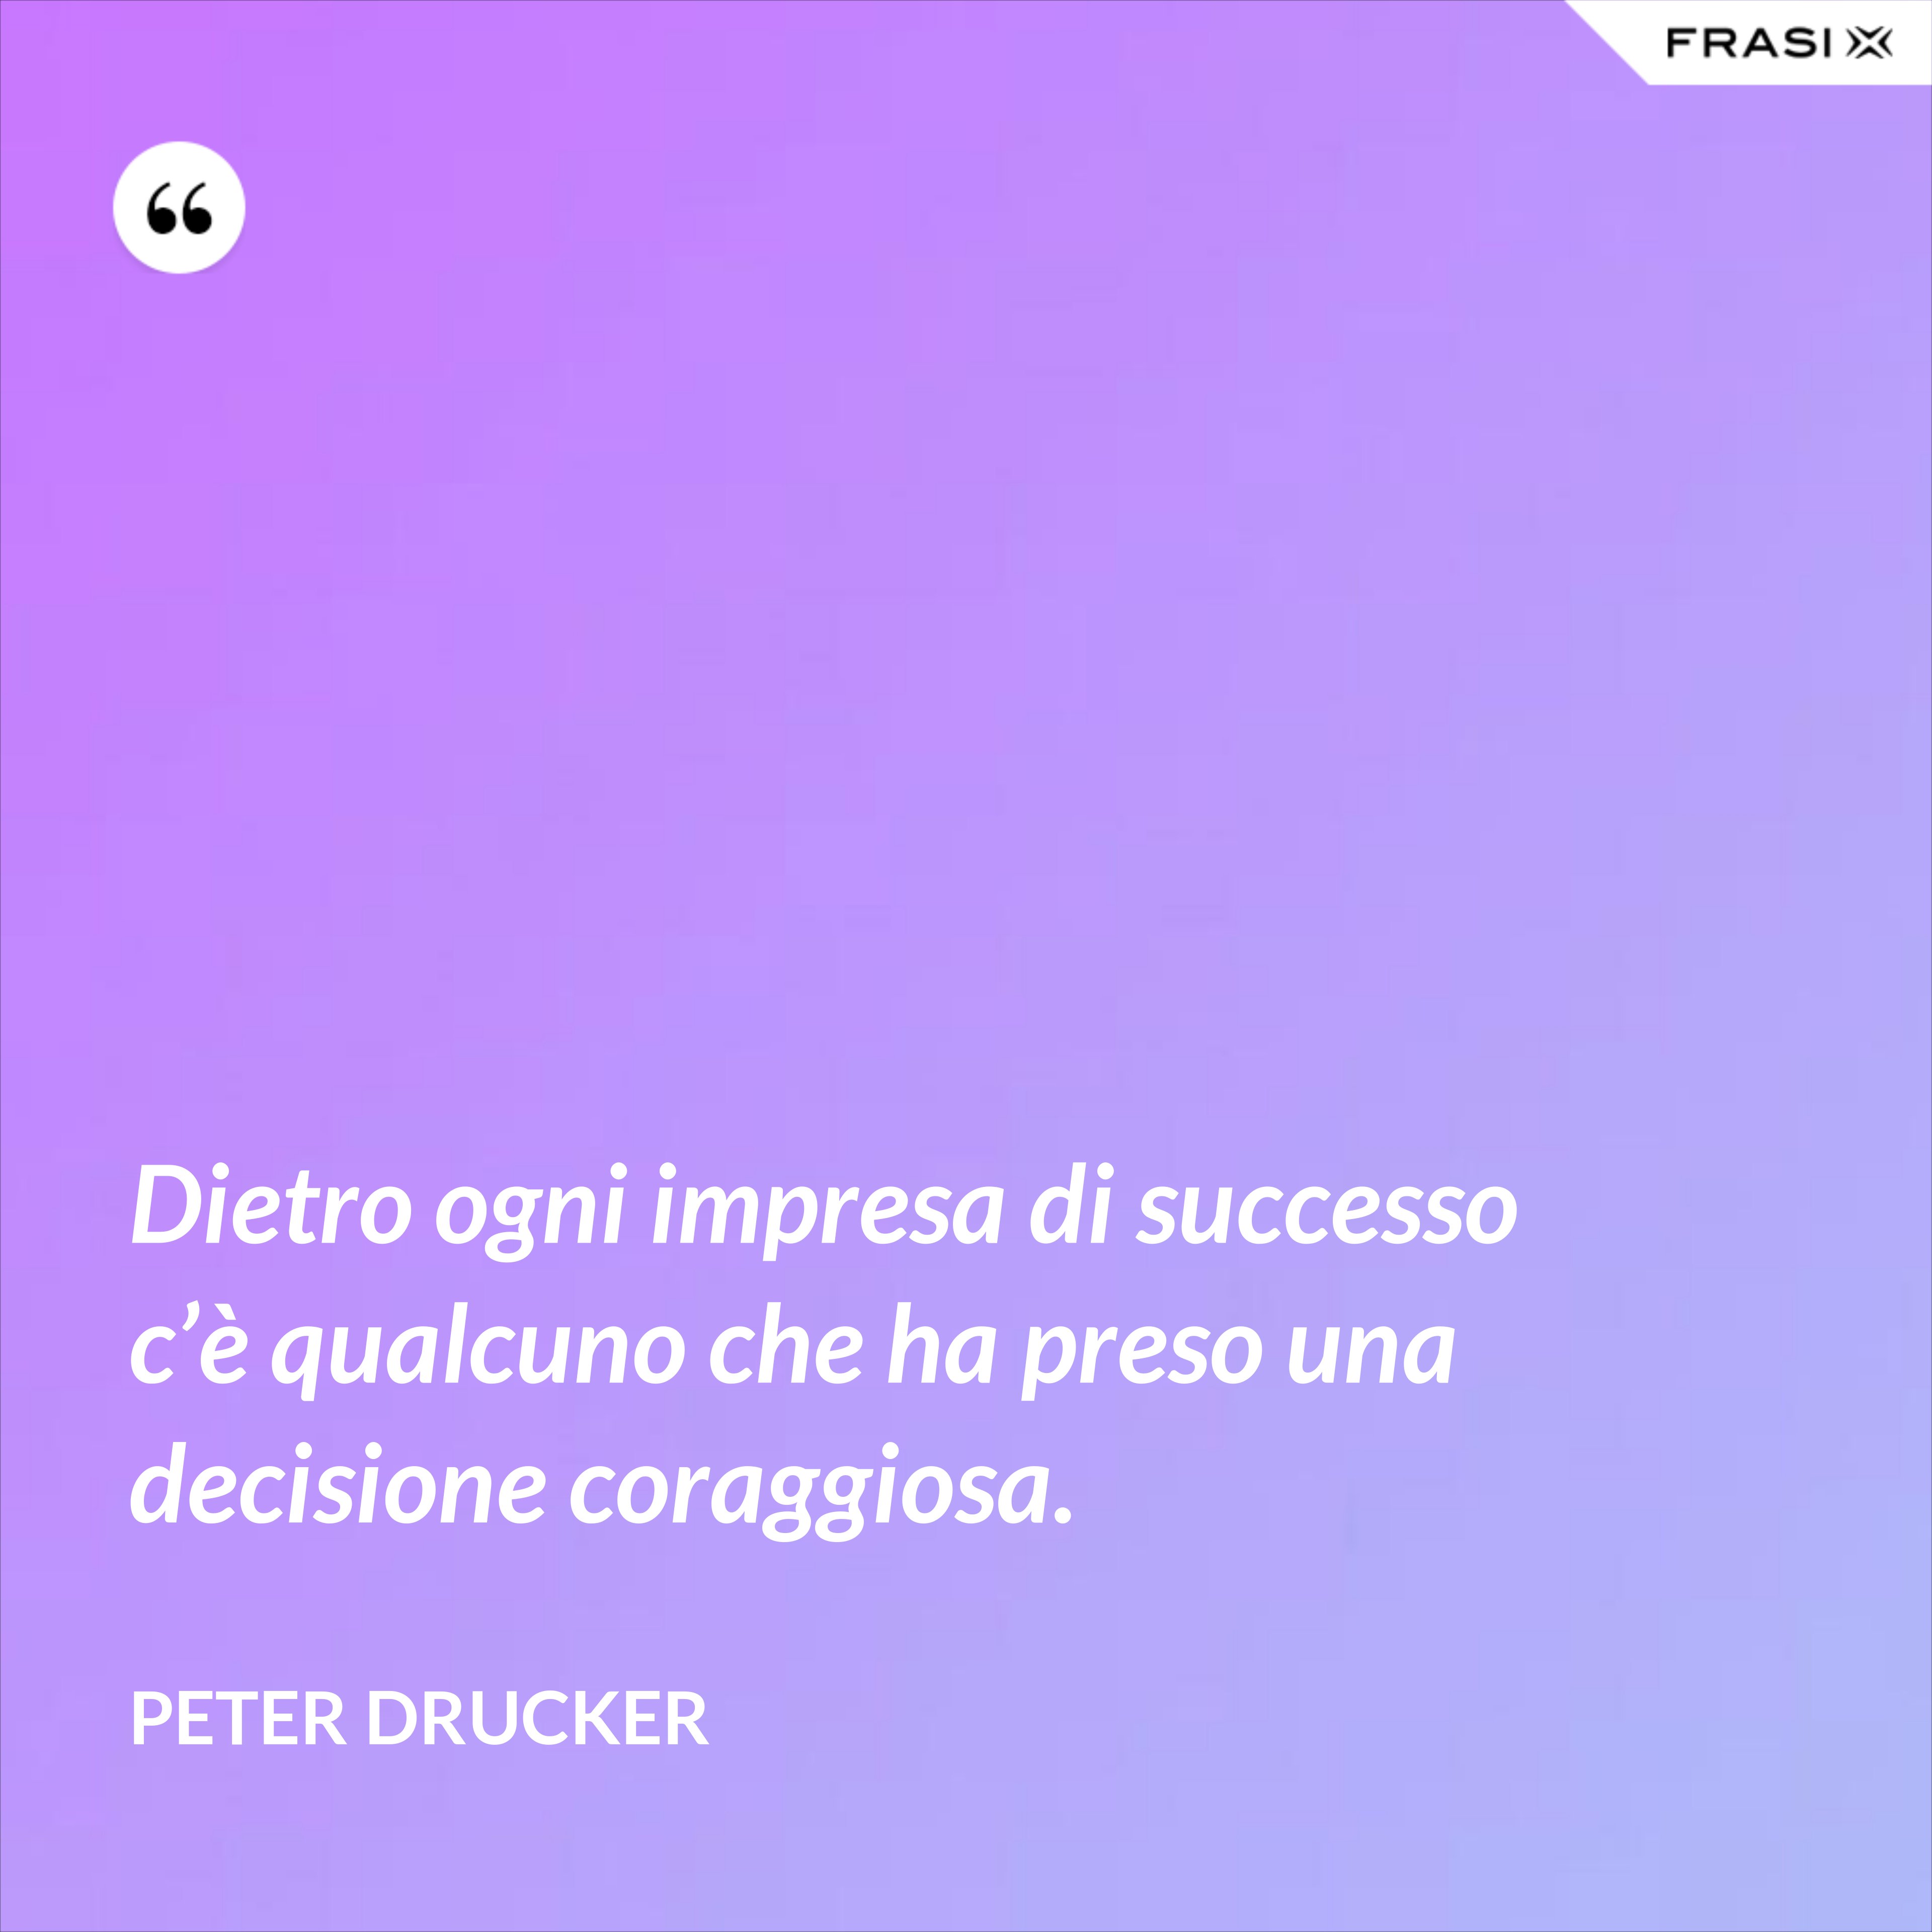 Dietro ogni impresa di successo c’è qualcuno che ha preso una decisione coraggiosa. - Peter Drucker